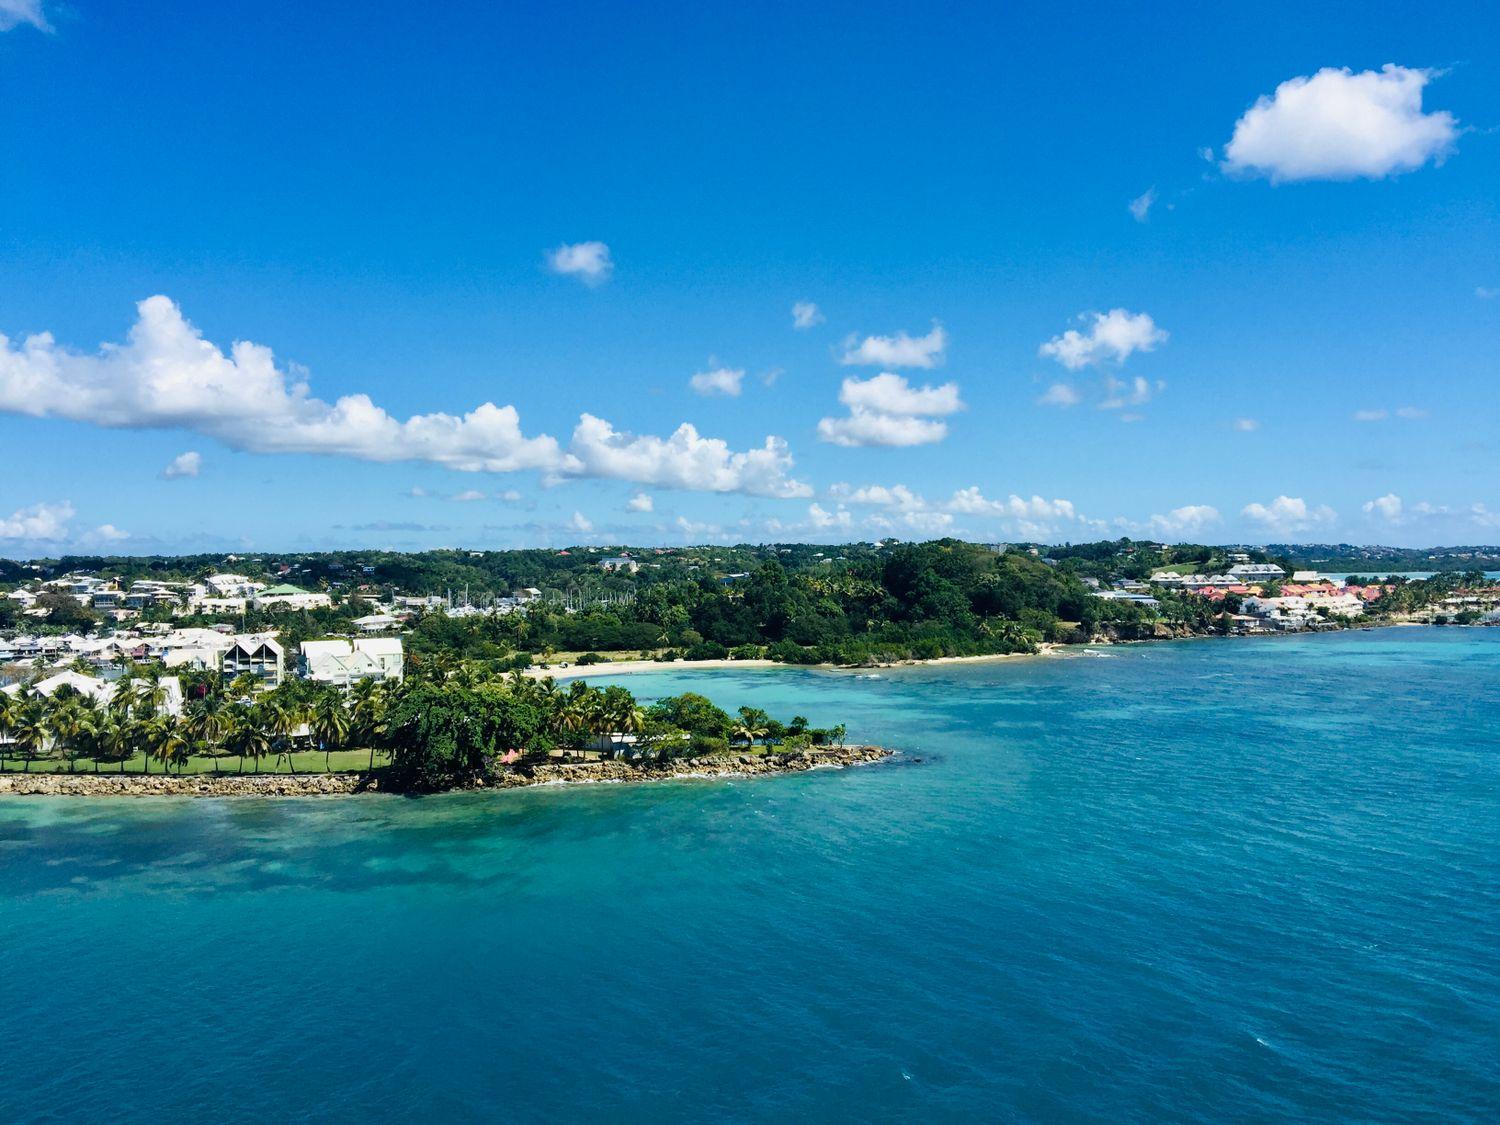 Landzungen an der Küste der Karibik mit Palmen, weißen Hausern in himmlisch blauem Meer